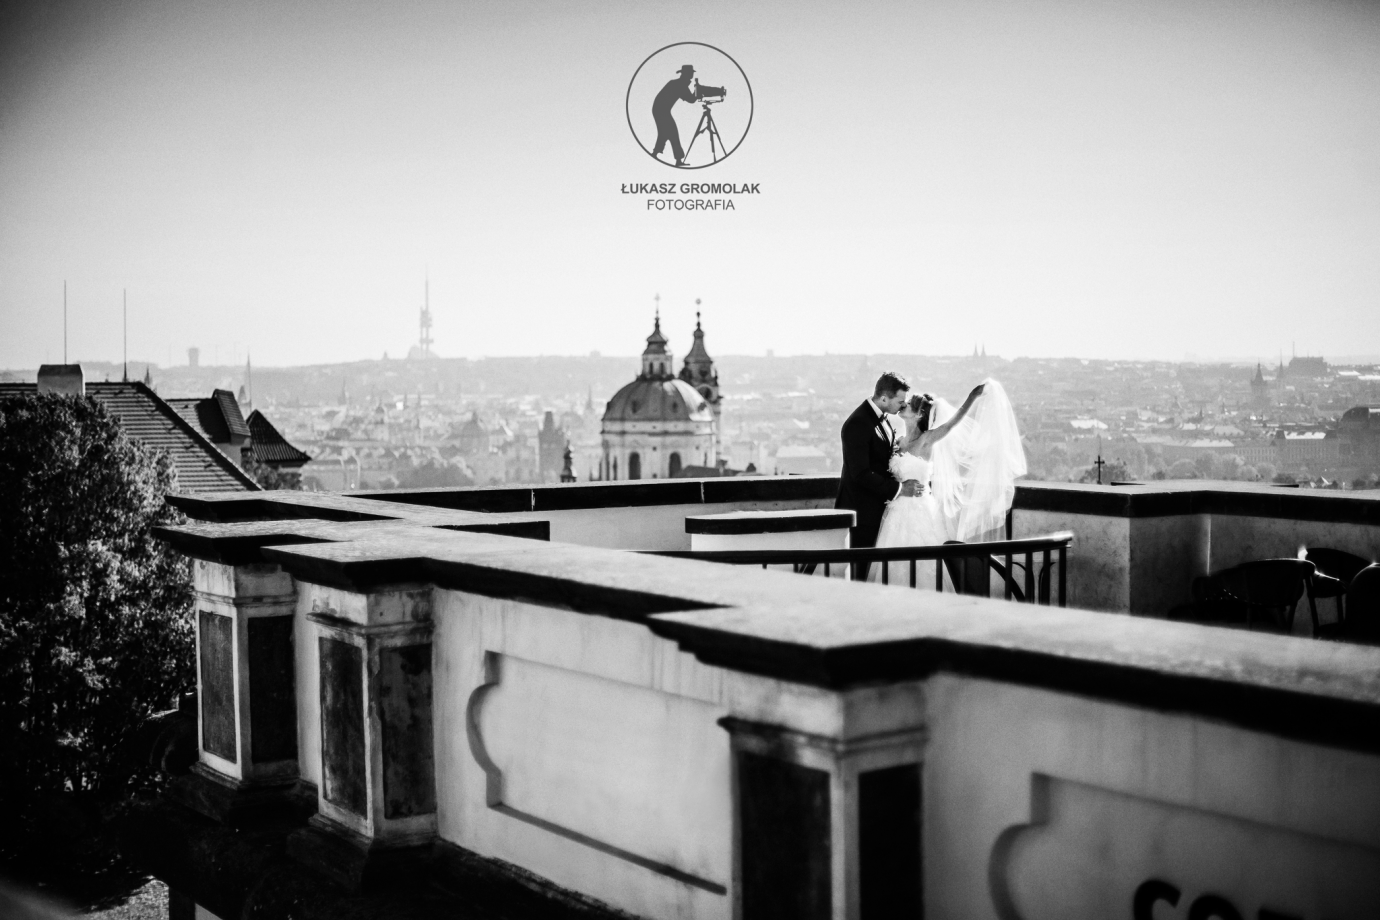 zdjęcia wroclaw fotograf lukasz-gromolak portfolio zdjecia slubne inspiracje wesele plener slubny sesja slubna